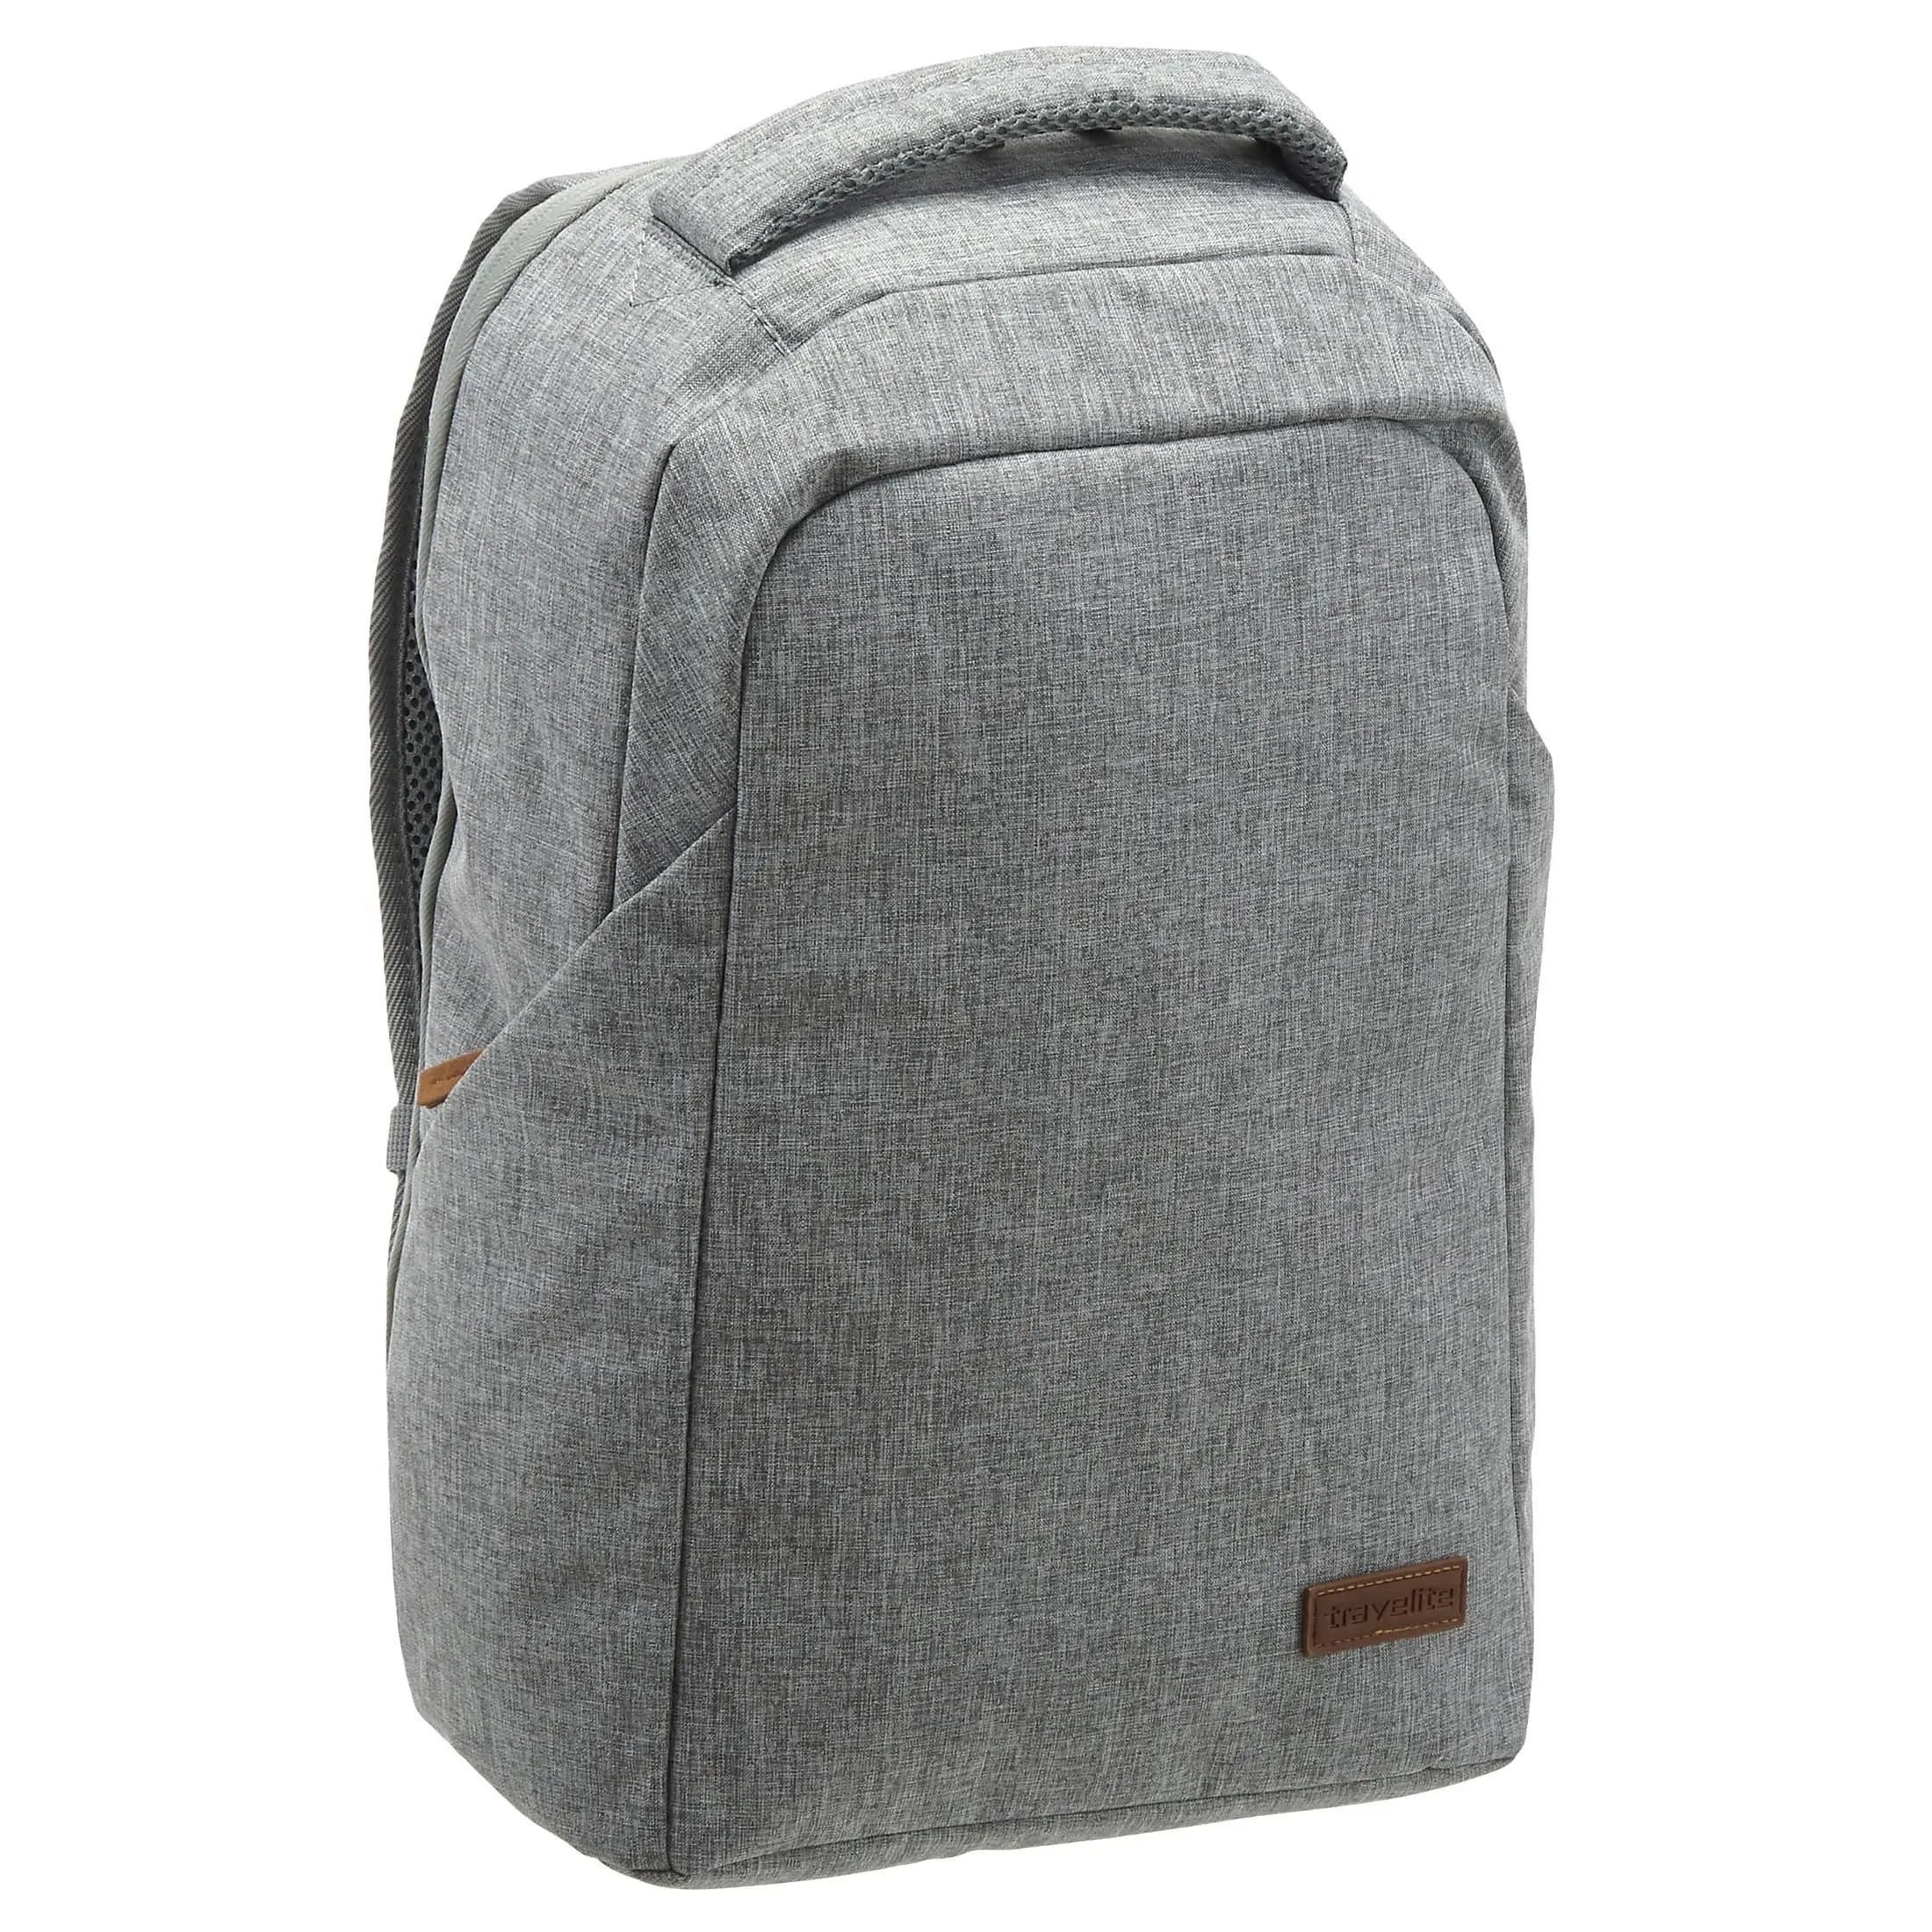 Travelite Basics Safety Backpack 46 cm - light gray